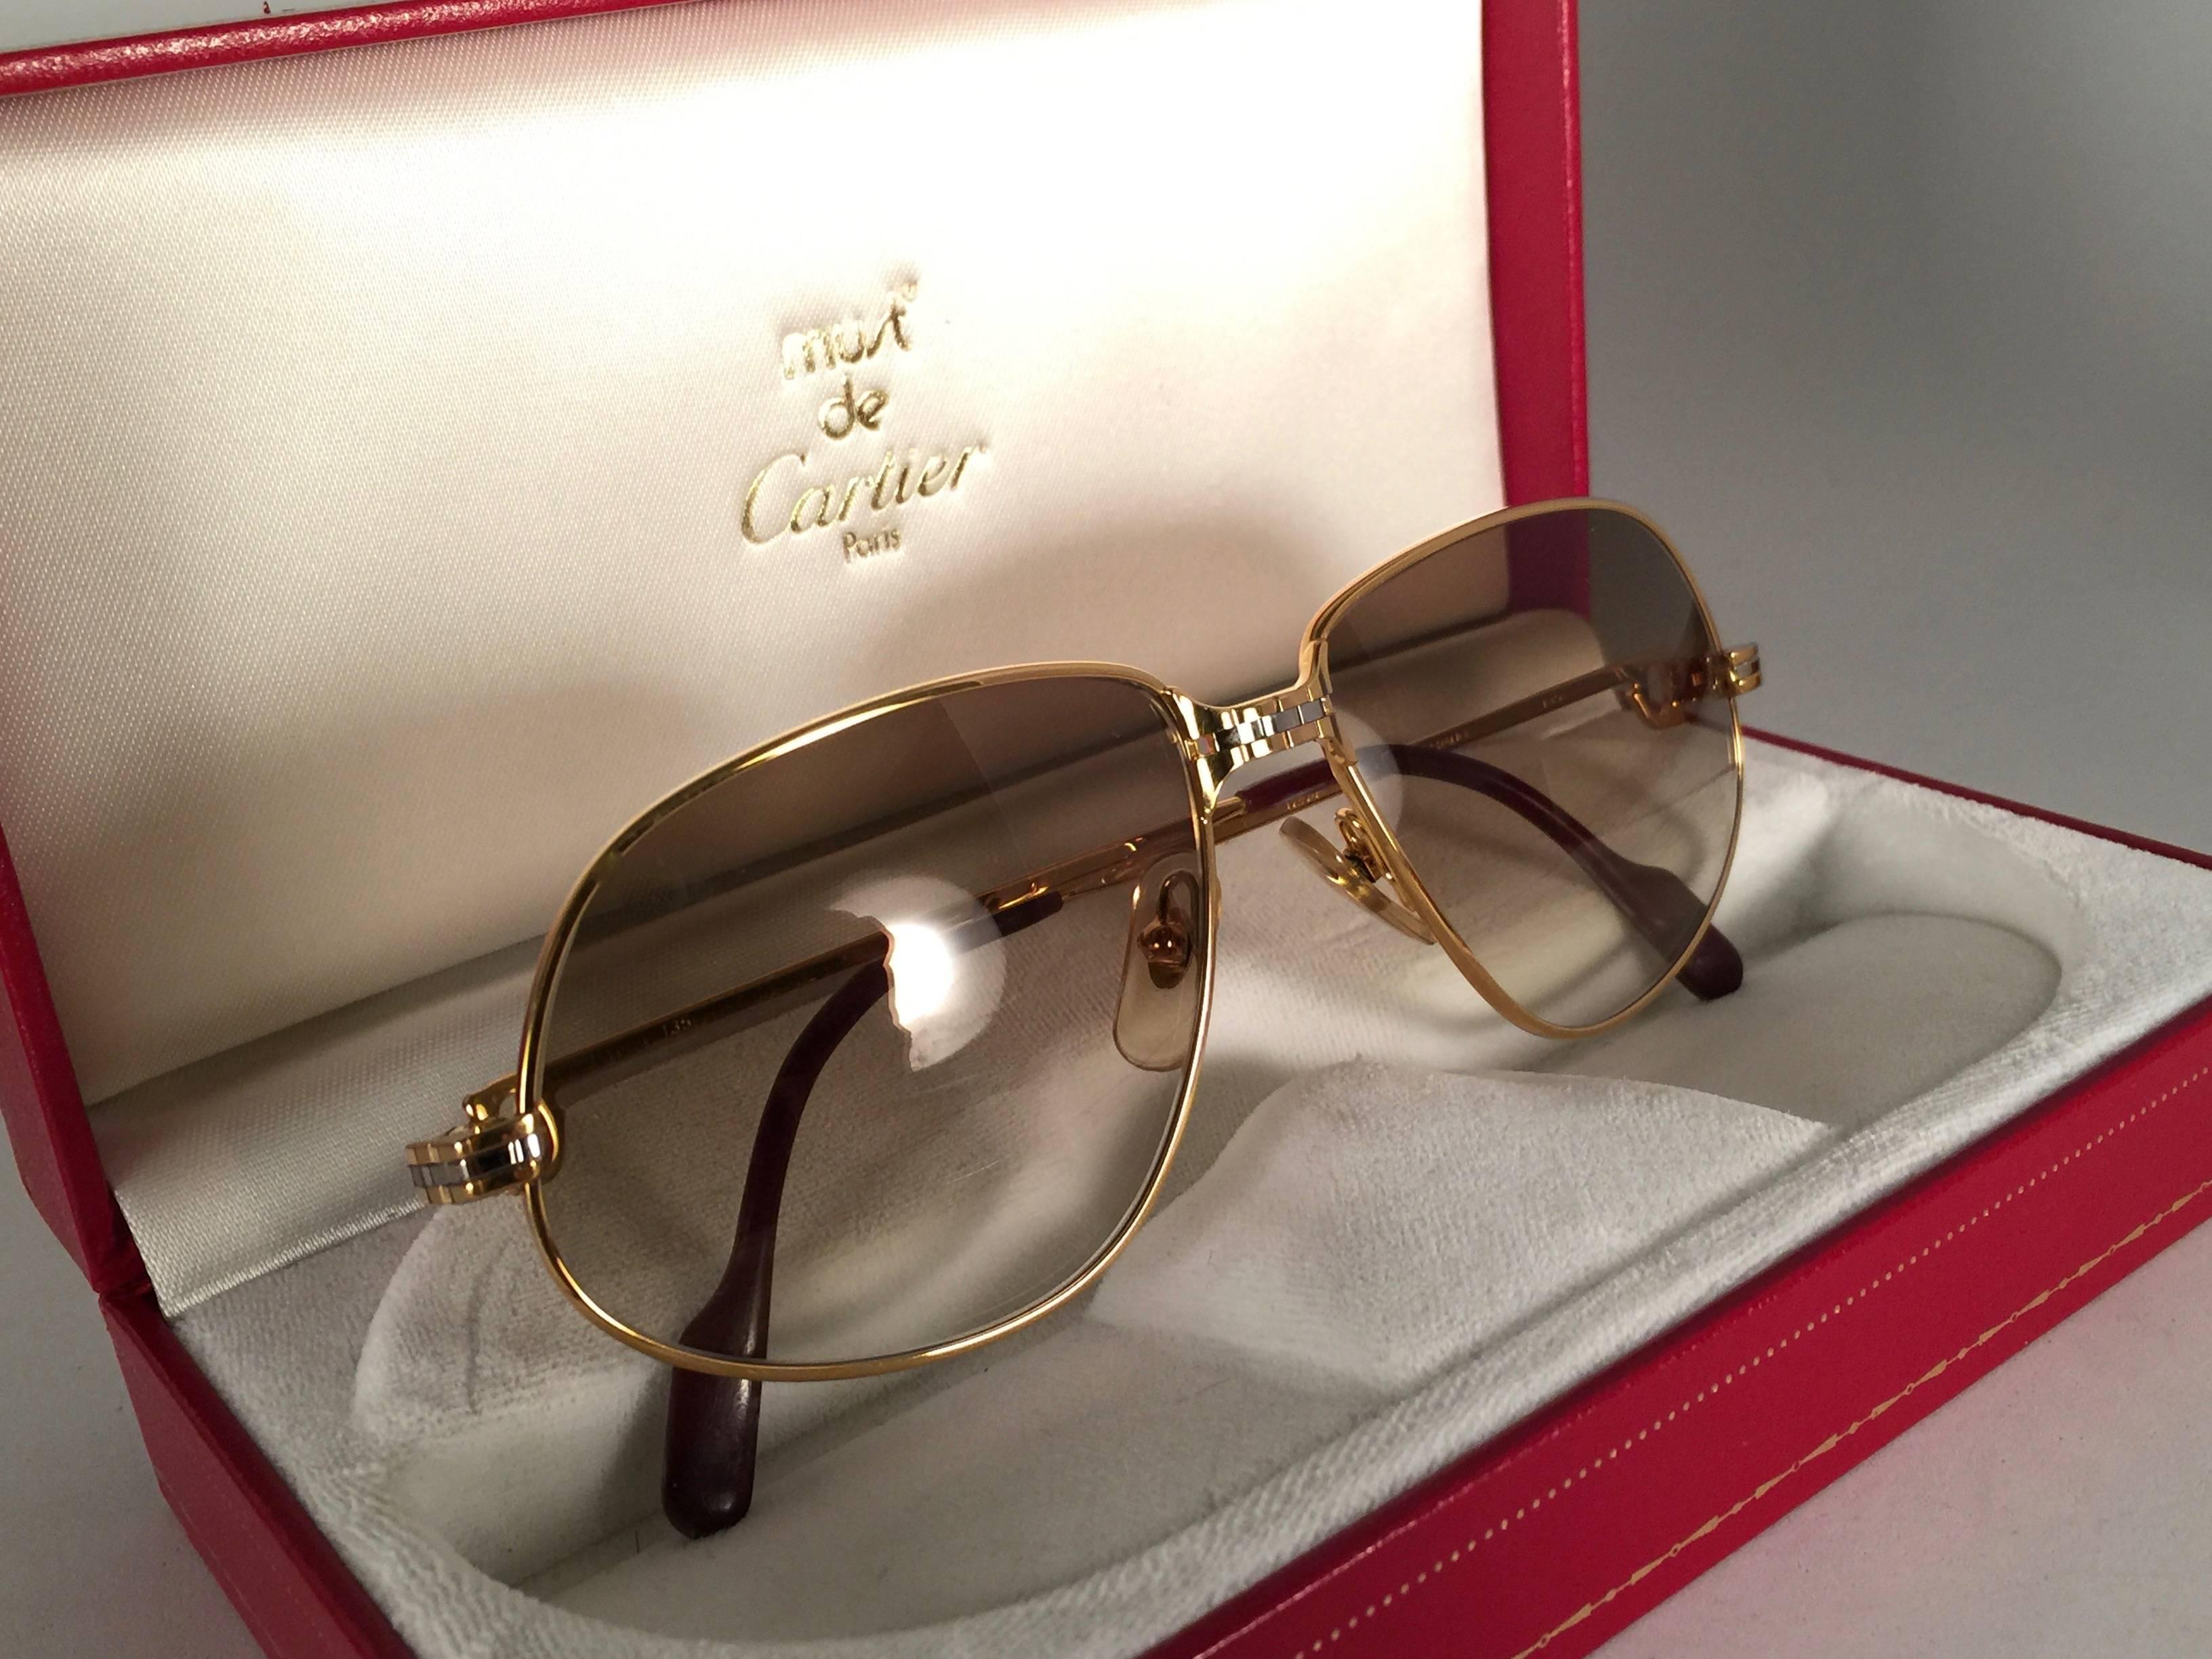 Vintage 1988 Cartier Panthere Sonnenbrille mit braunen Verlaufsgläsern (UV-Schutz).  Der Rahmen ist mit der Vorderseite und den Seiten in Gelb- und Weißgold. Alle Punzierungen. burgunderfarbene Ohrpolster. 
Beide Arme tragen das C von Cartier auf